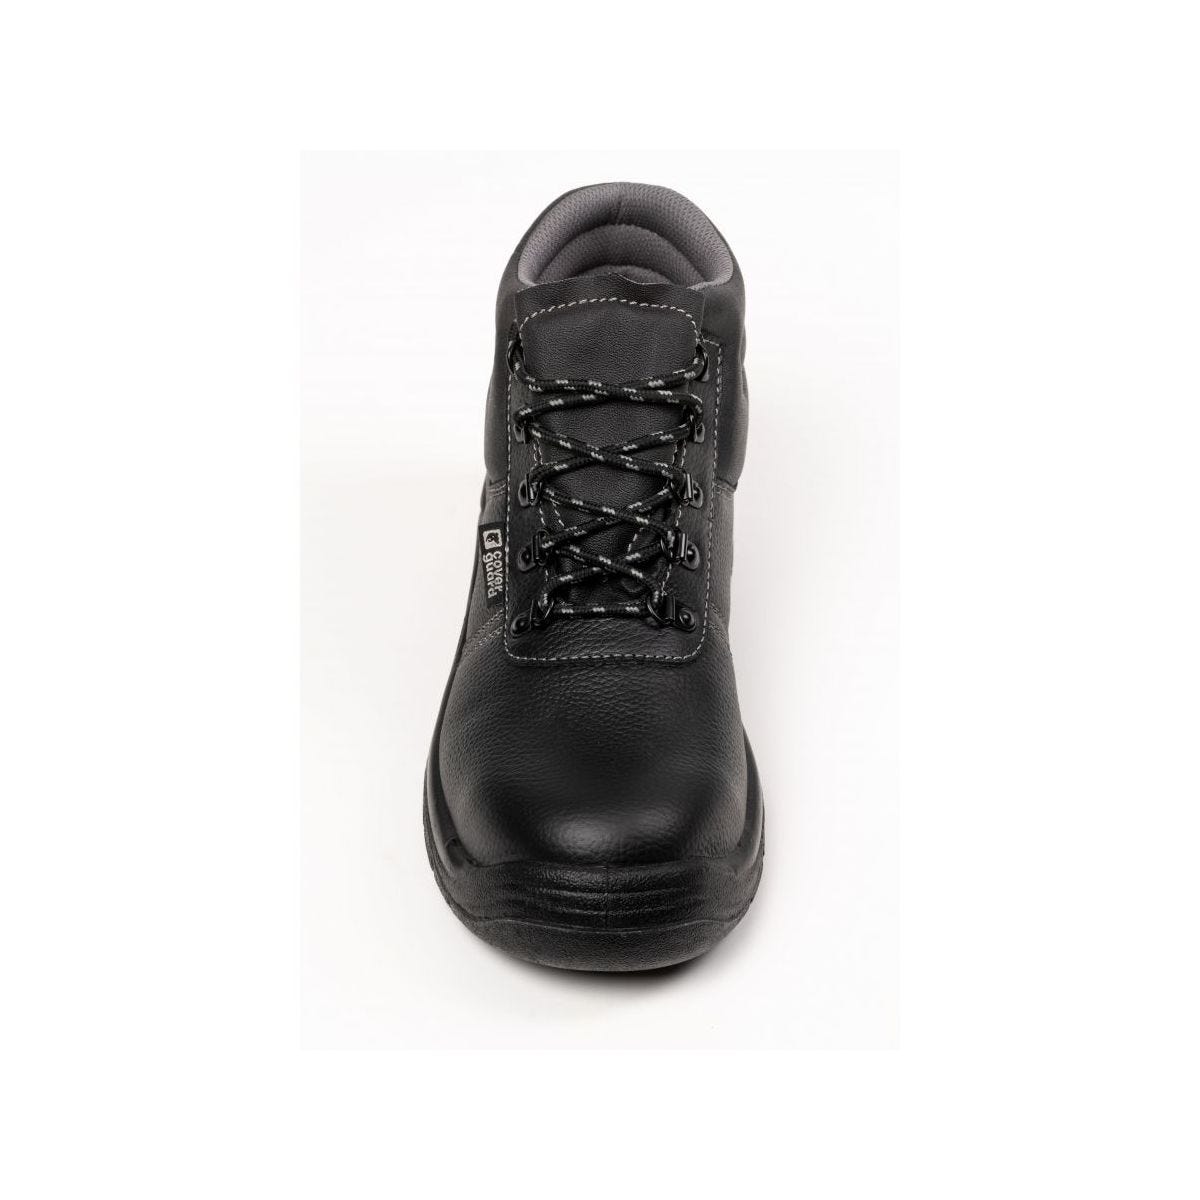 Chaussures de sécurité hautes AGATE II S3 Noir - Coverguard - Taille 41 3